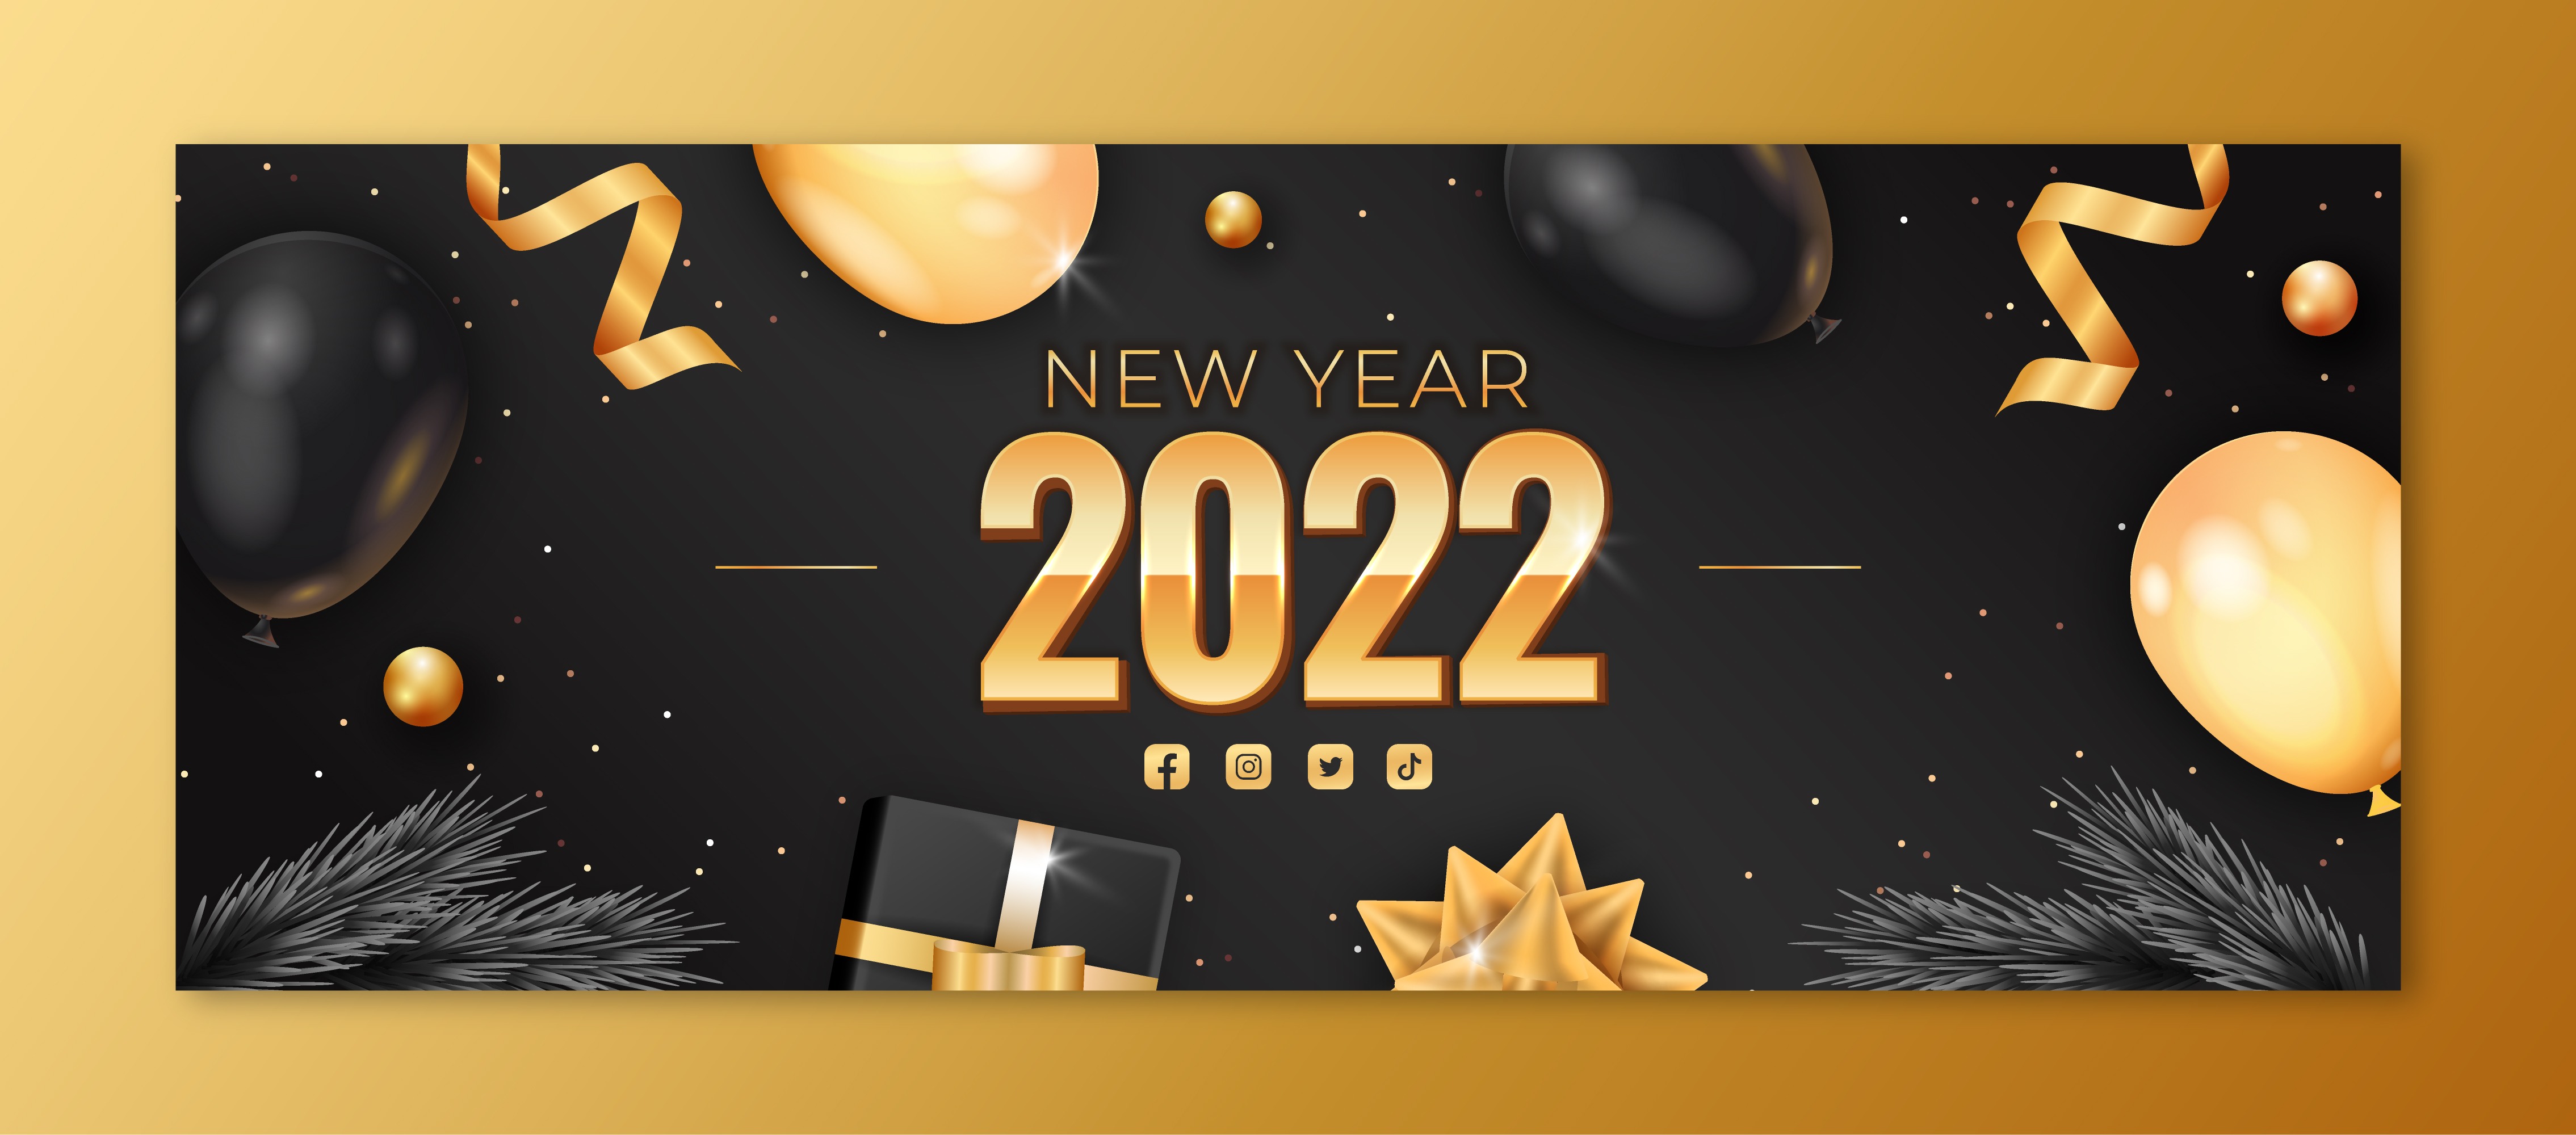 2022新年封面模板-0294-爱设计爱分享c